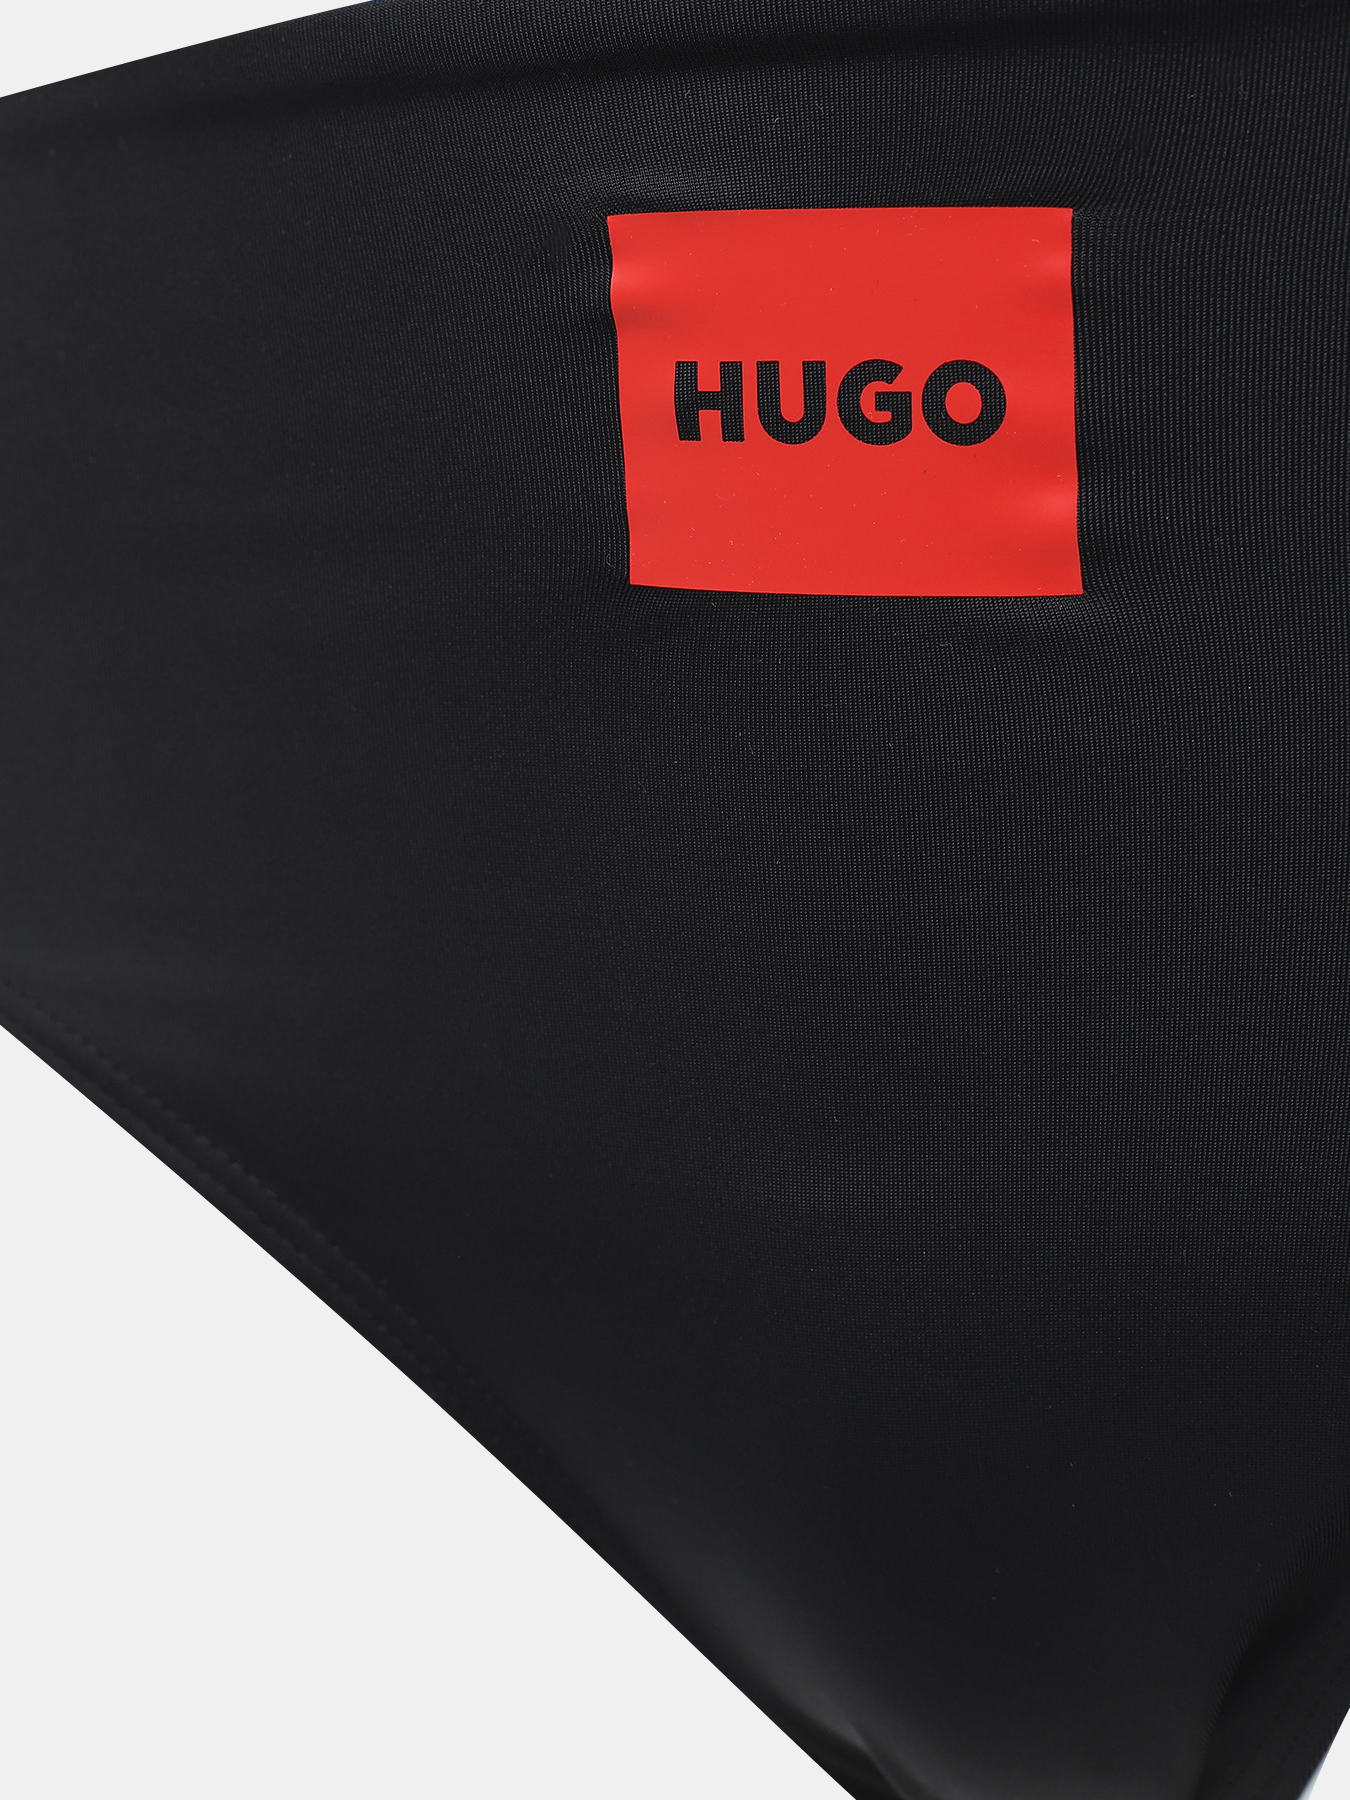 Плавки купальные Red Label HUGO 436062-042, цвет черный, размер 42-44 - фото 3